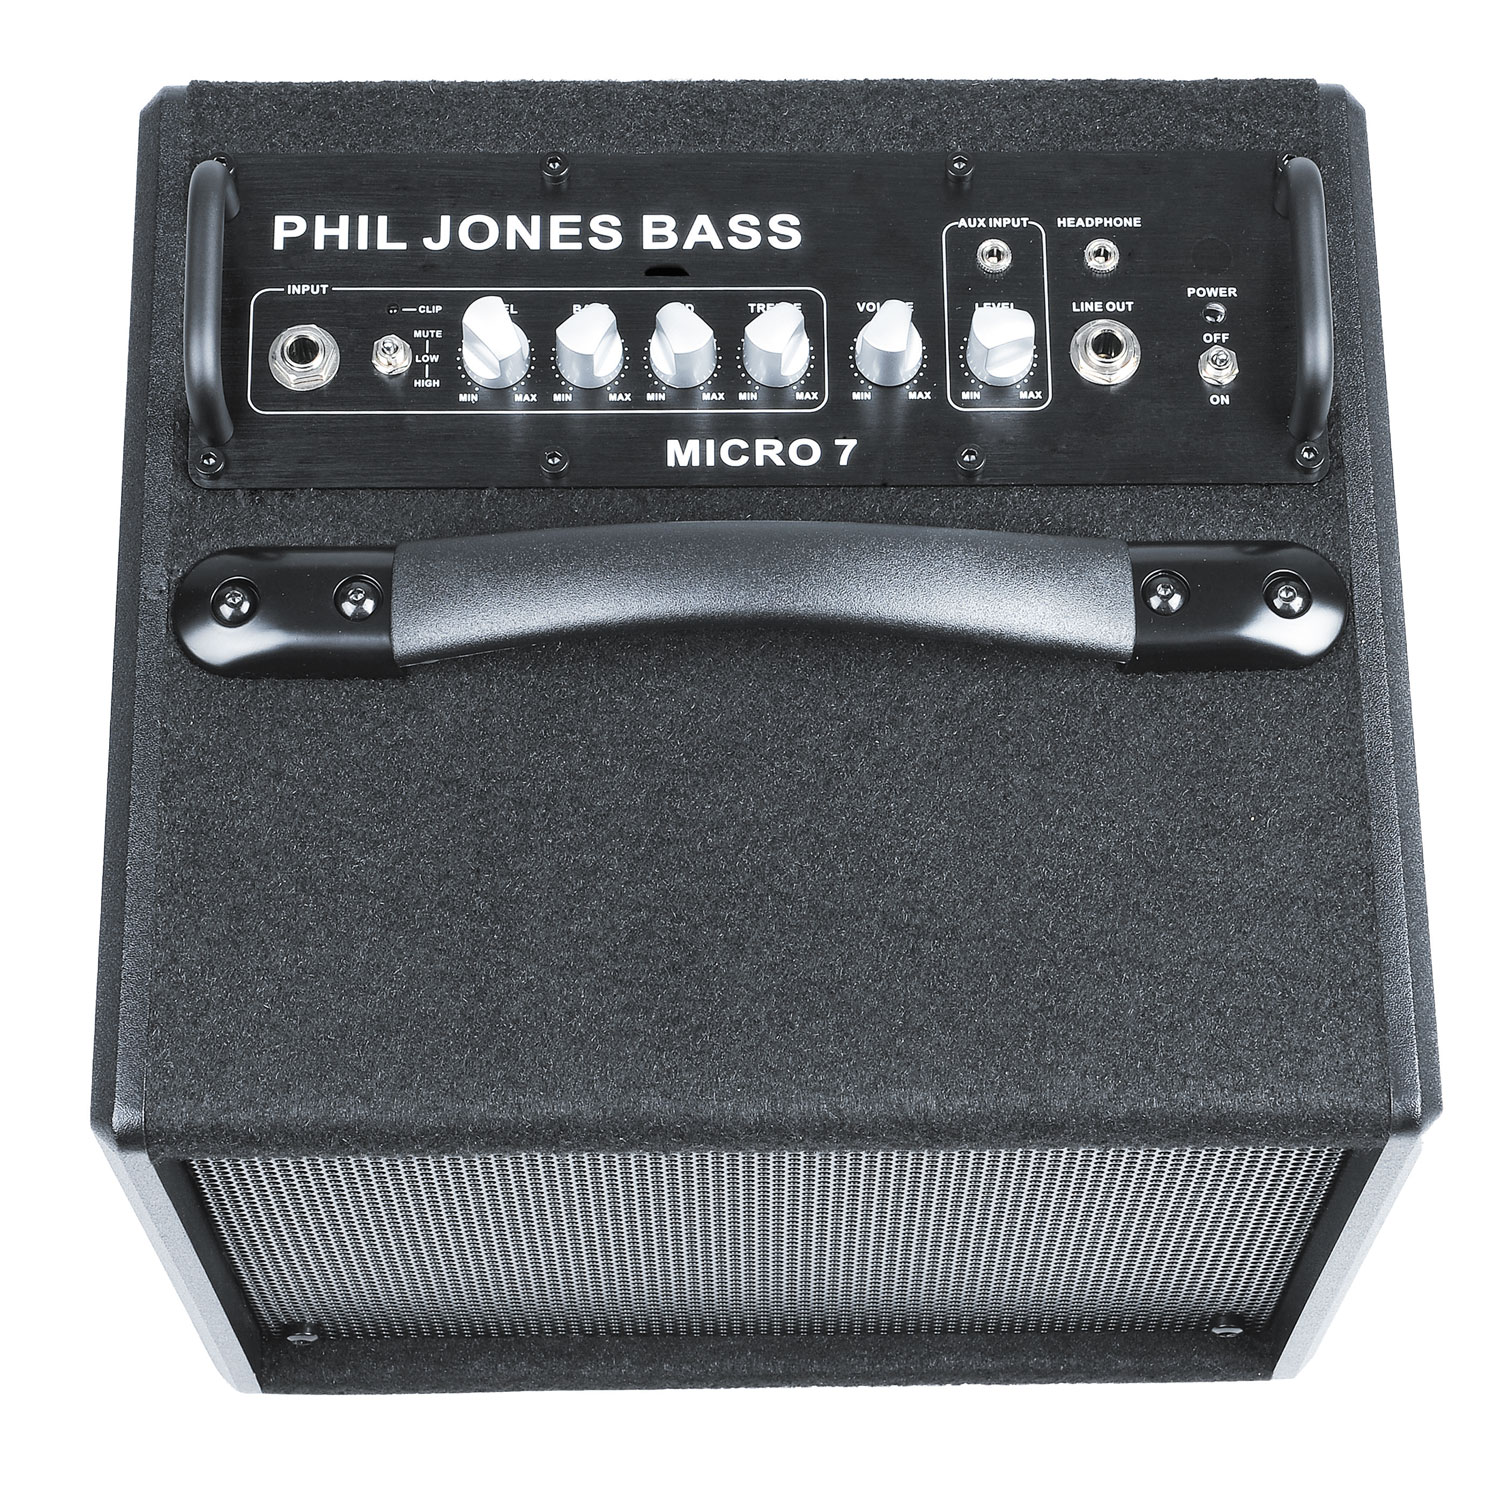 PHIL JONES BASS Micro 7 Bass Amp ベースアンプ